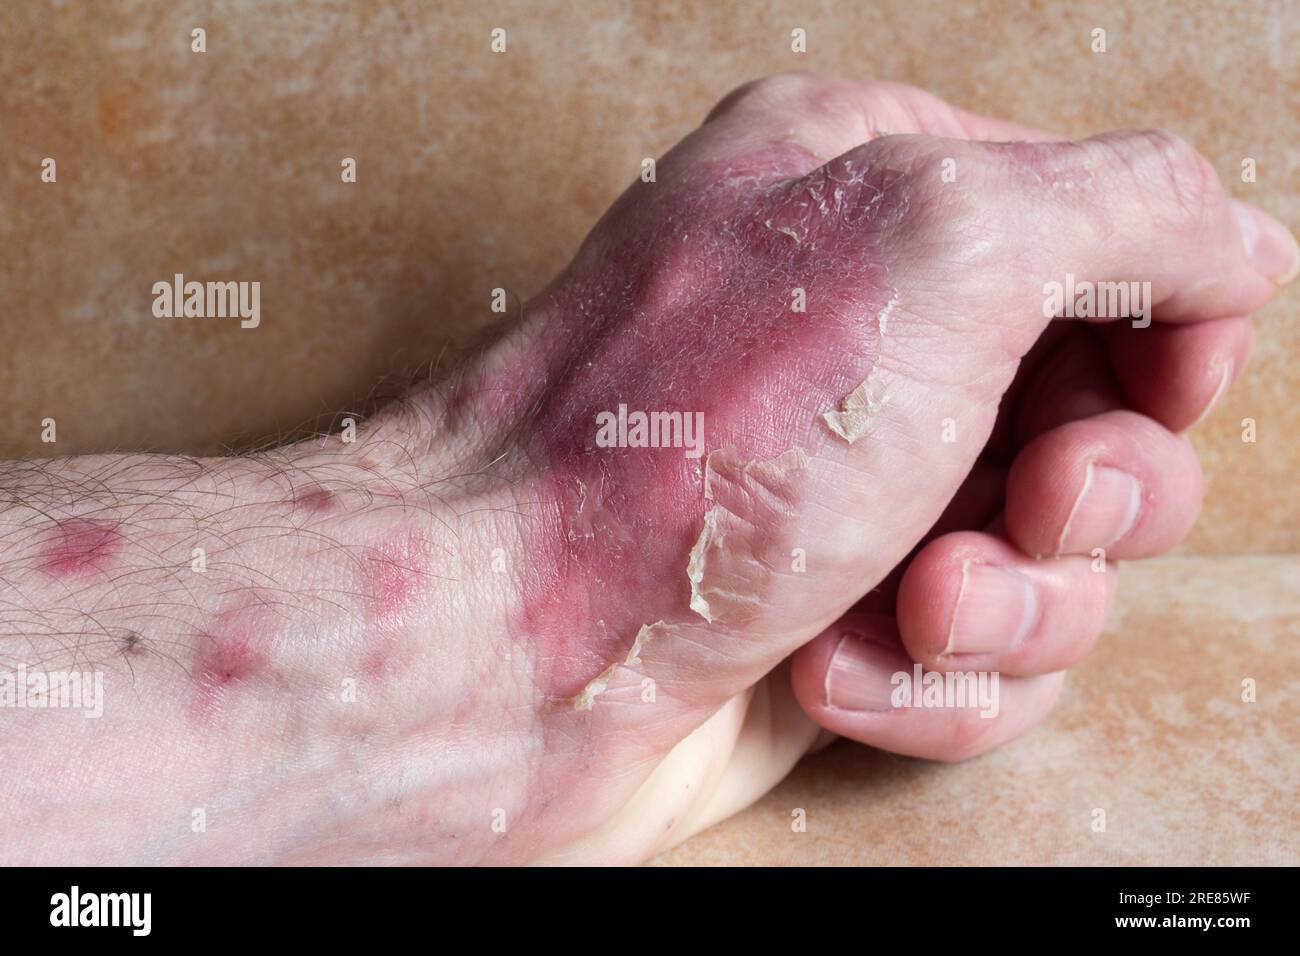 Primo piano di ustioni di secondo grado che rivelano un cambiamento di colore e consistenza della pelle sulla mano. Pronto soccorso, guarigione delle ferite, recupero delle ustioni. Foto Stock